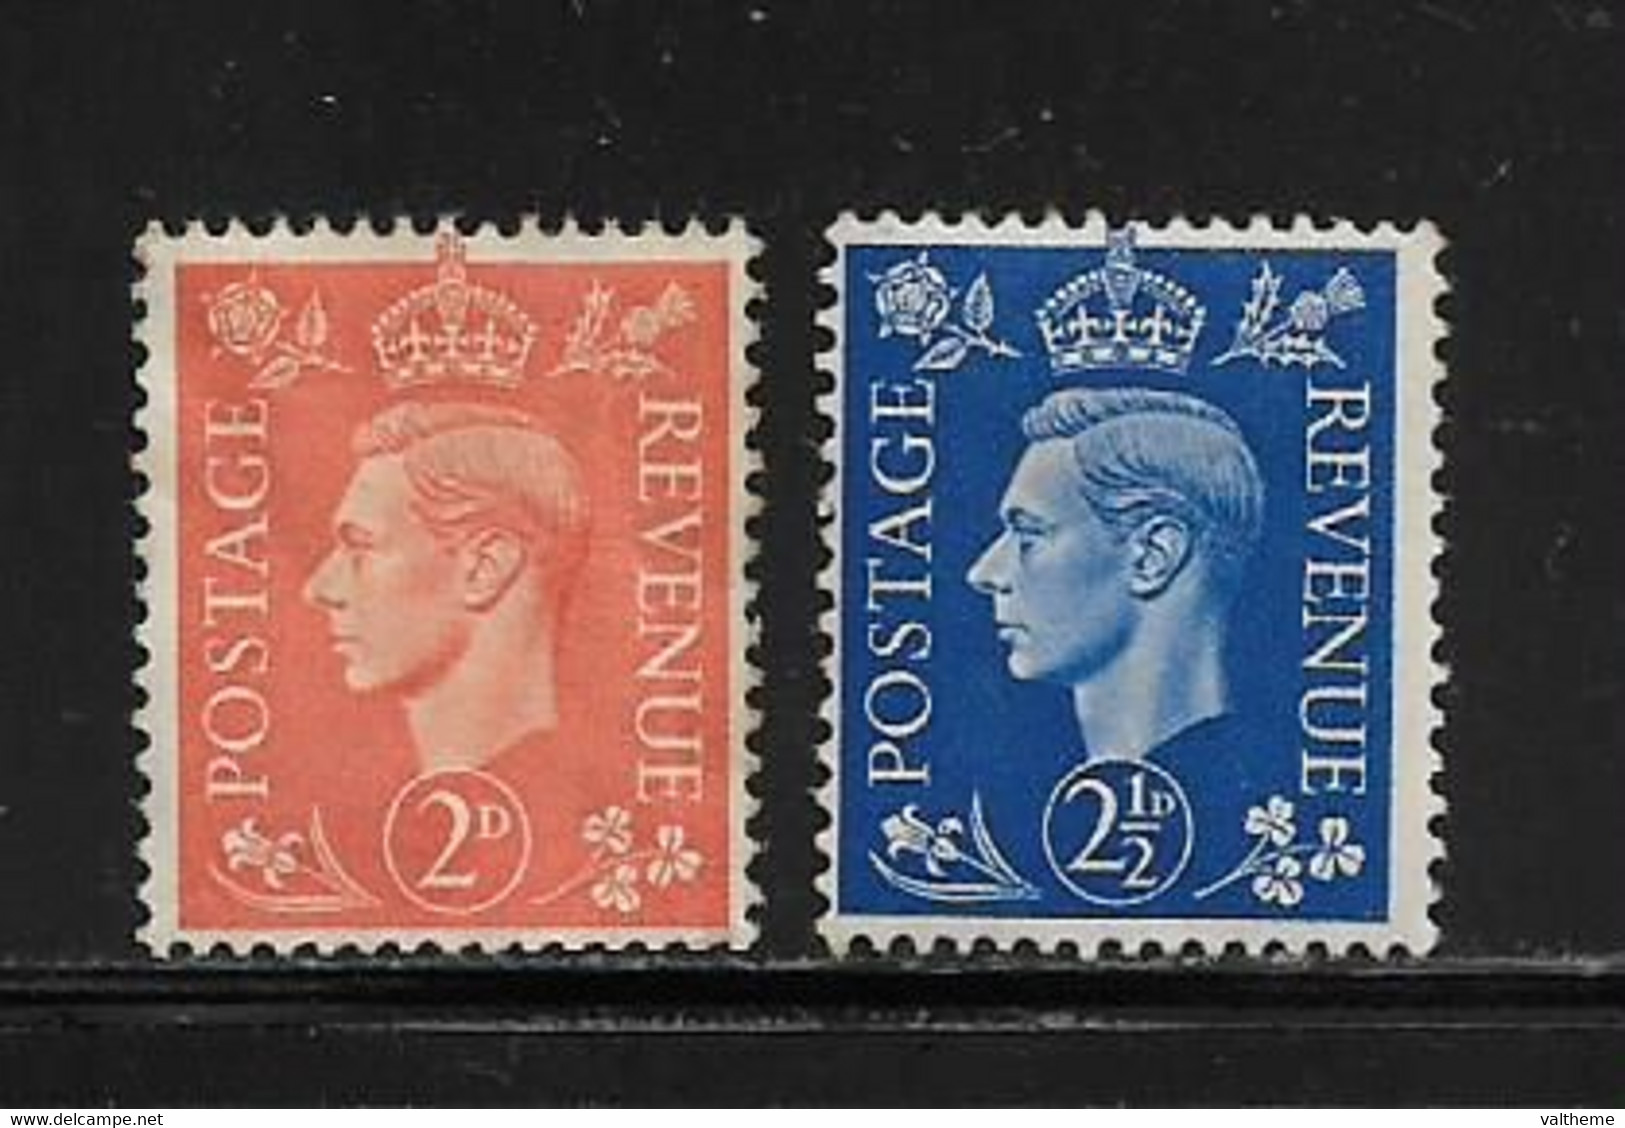 GRANDE BRETAGNE  ( EUGDB - 481 )  1937  N° YVERT ET TELLIER  N° 212/213  N* - Unused Stamps